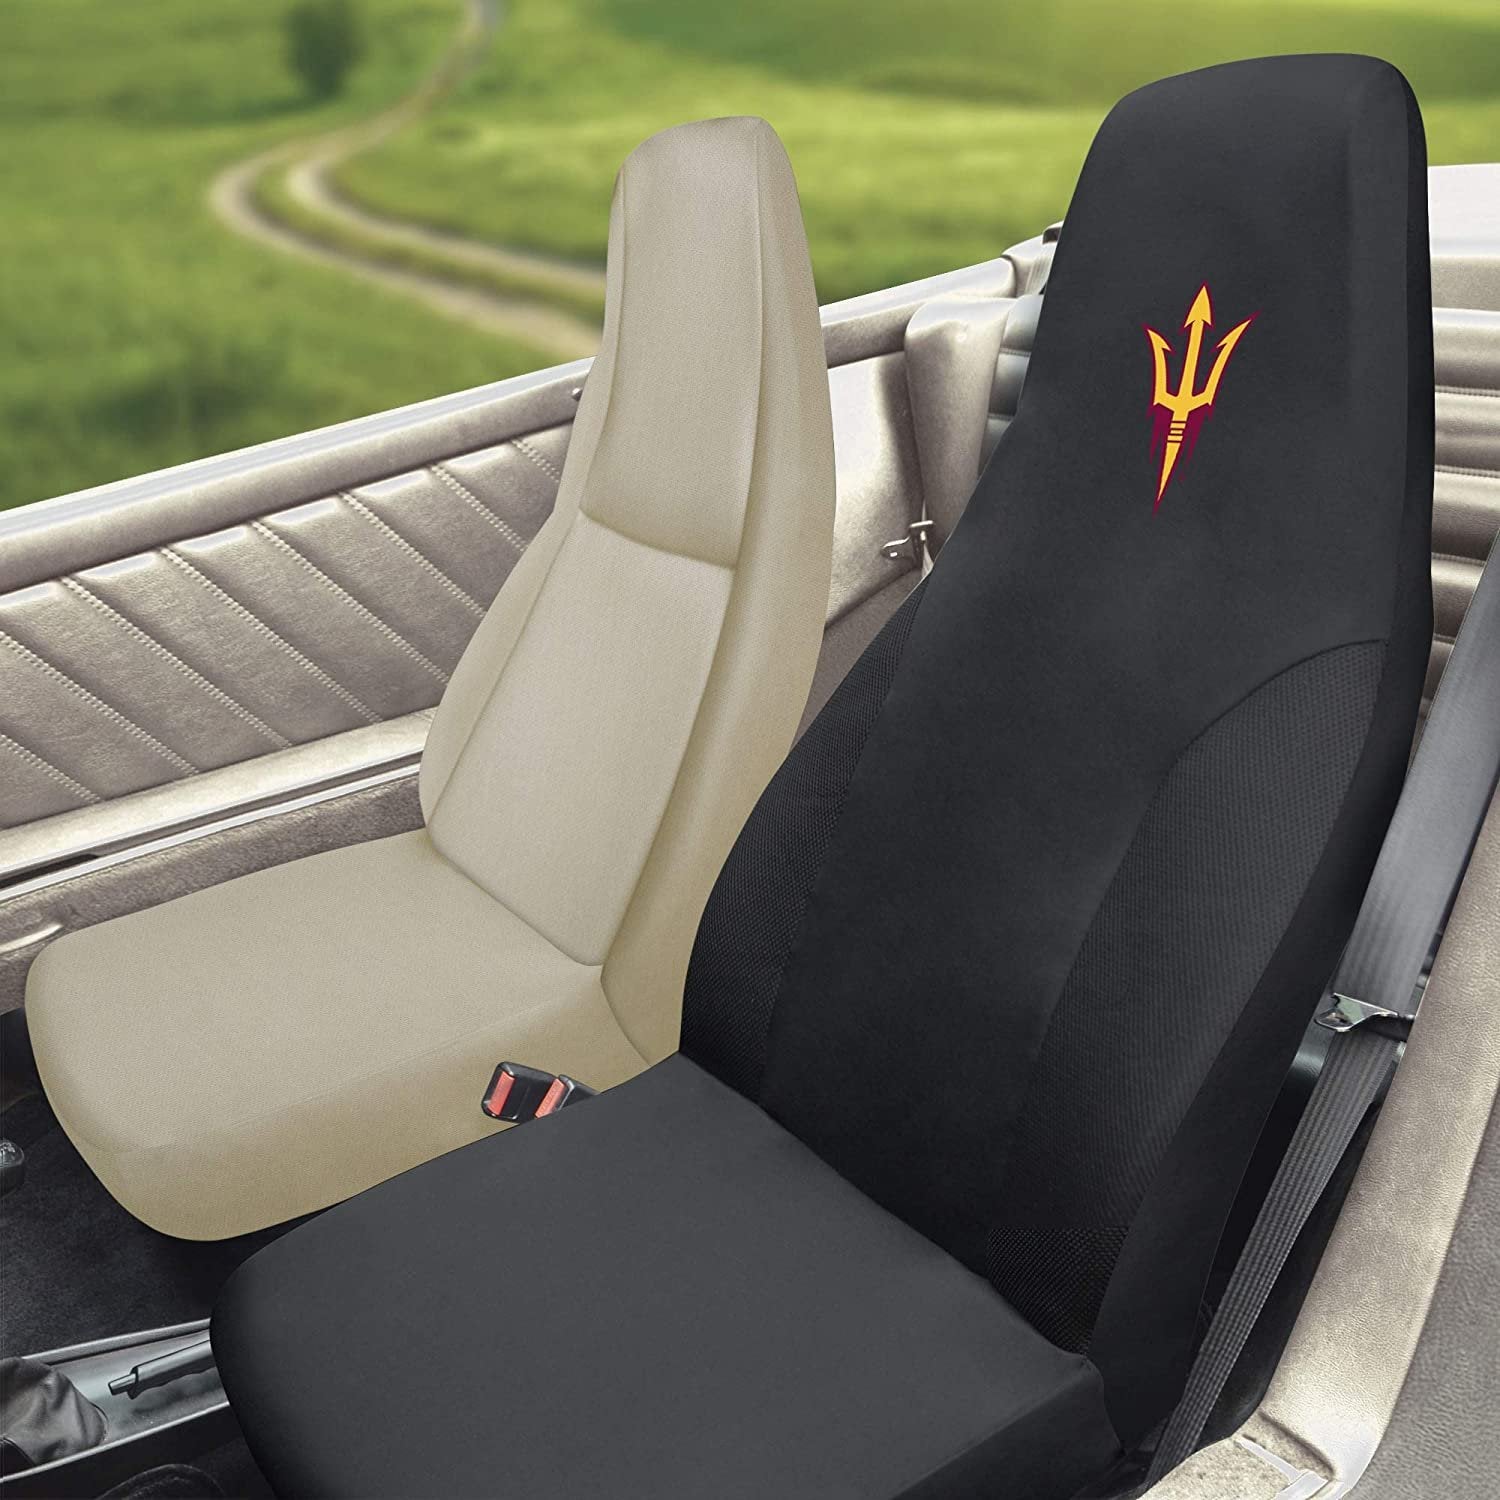 Arizona State Sun Devils Bucket Auto Seat Cover 48x20 Inch Elastic